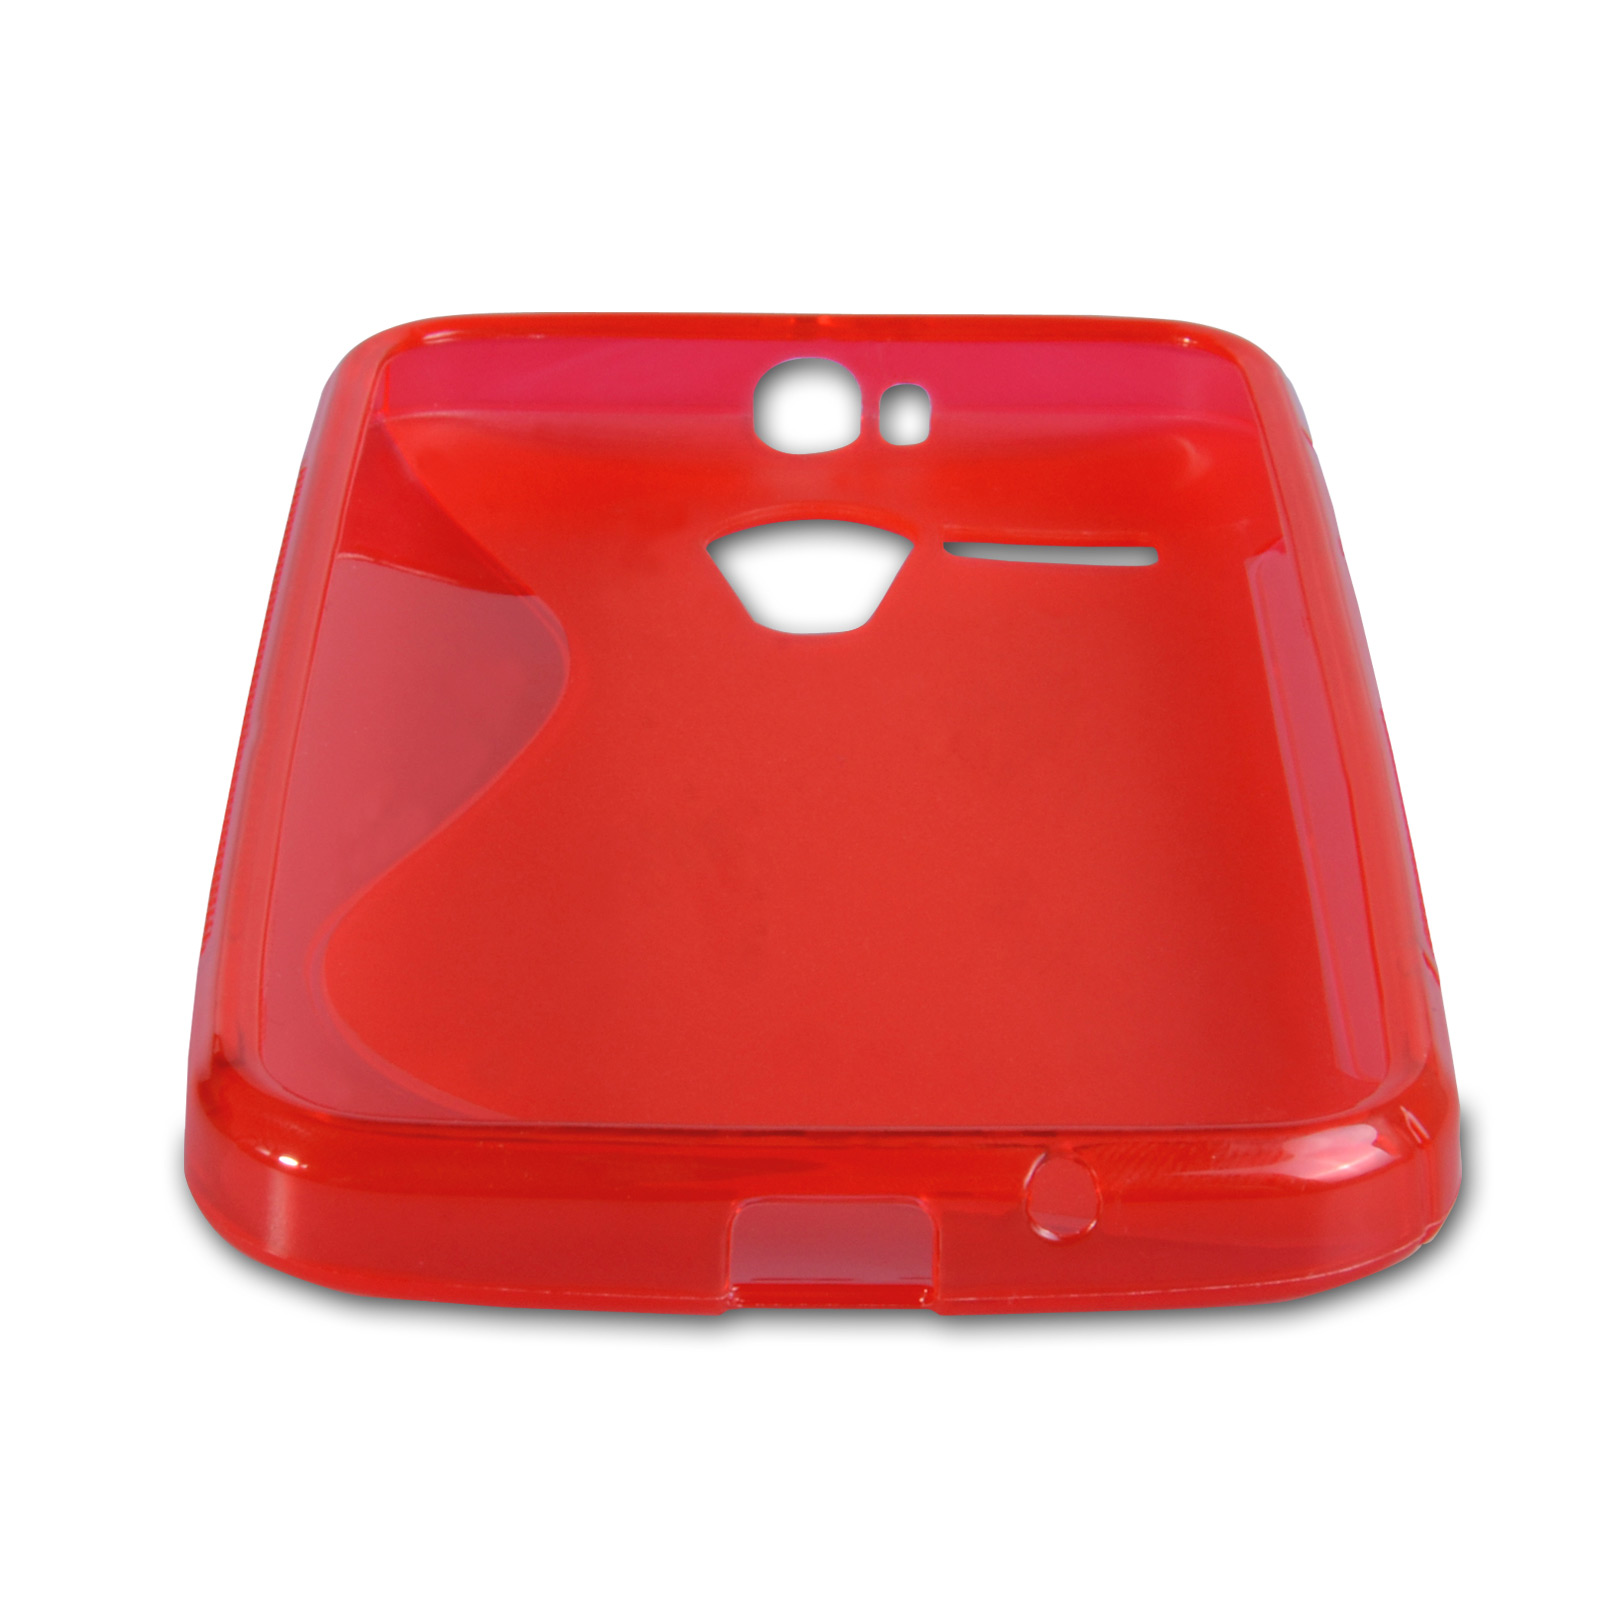 Caseflex Motorola Moto G Silicone Gel S-Line Case - Red